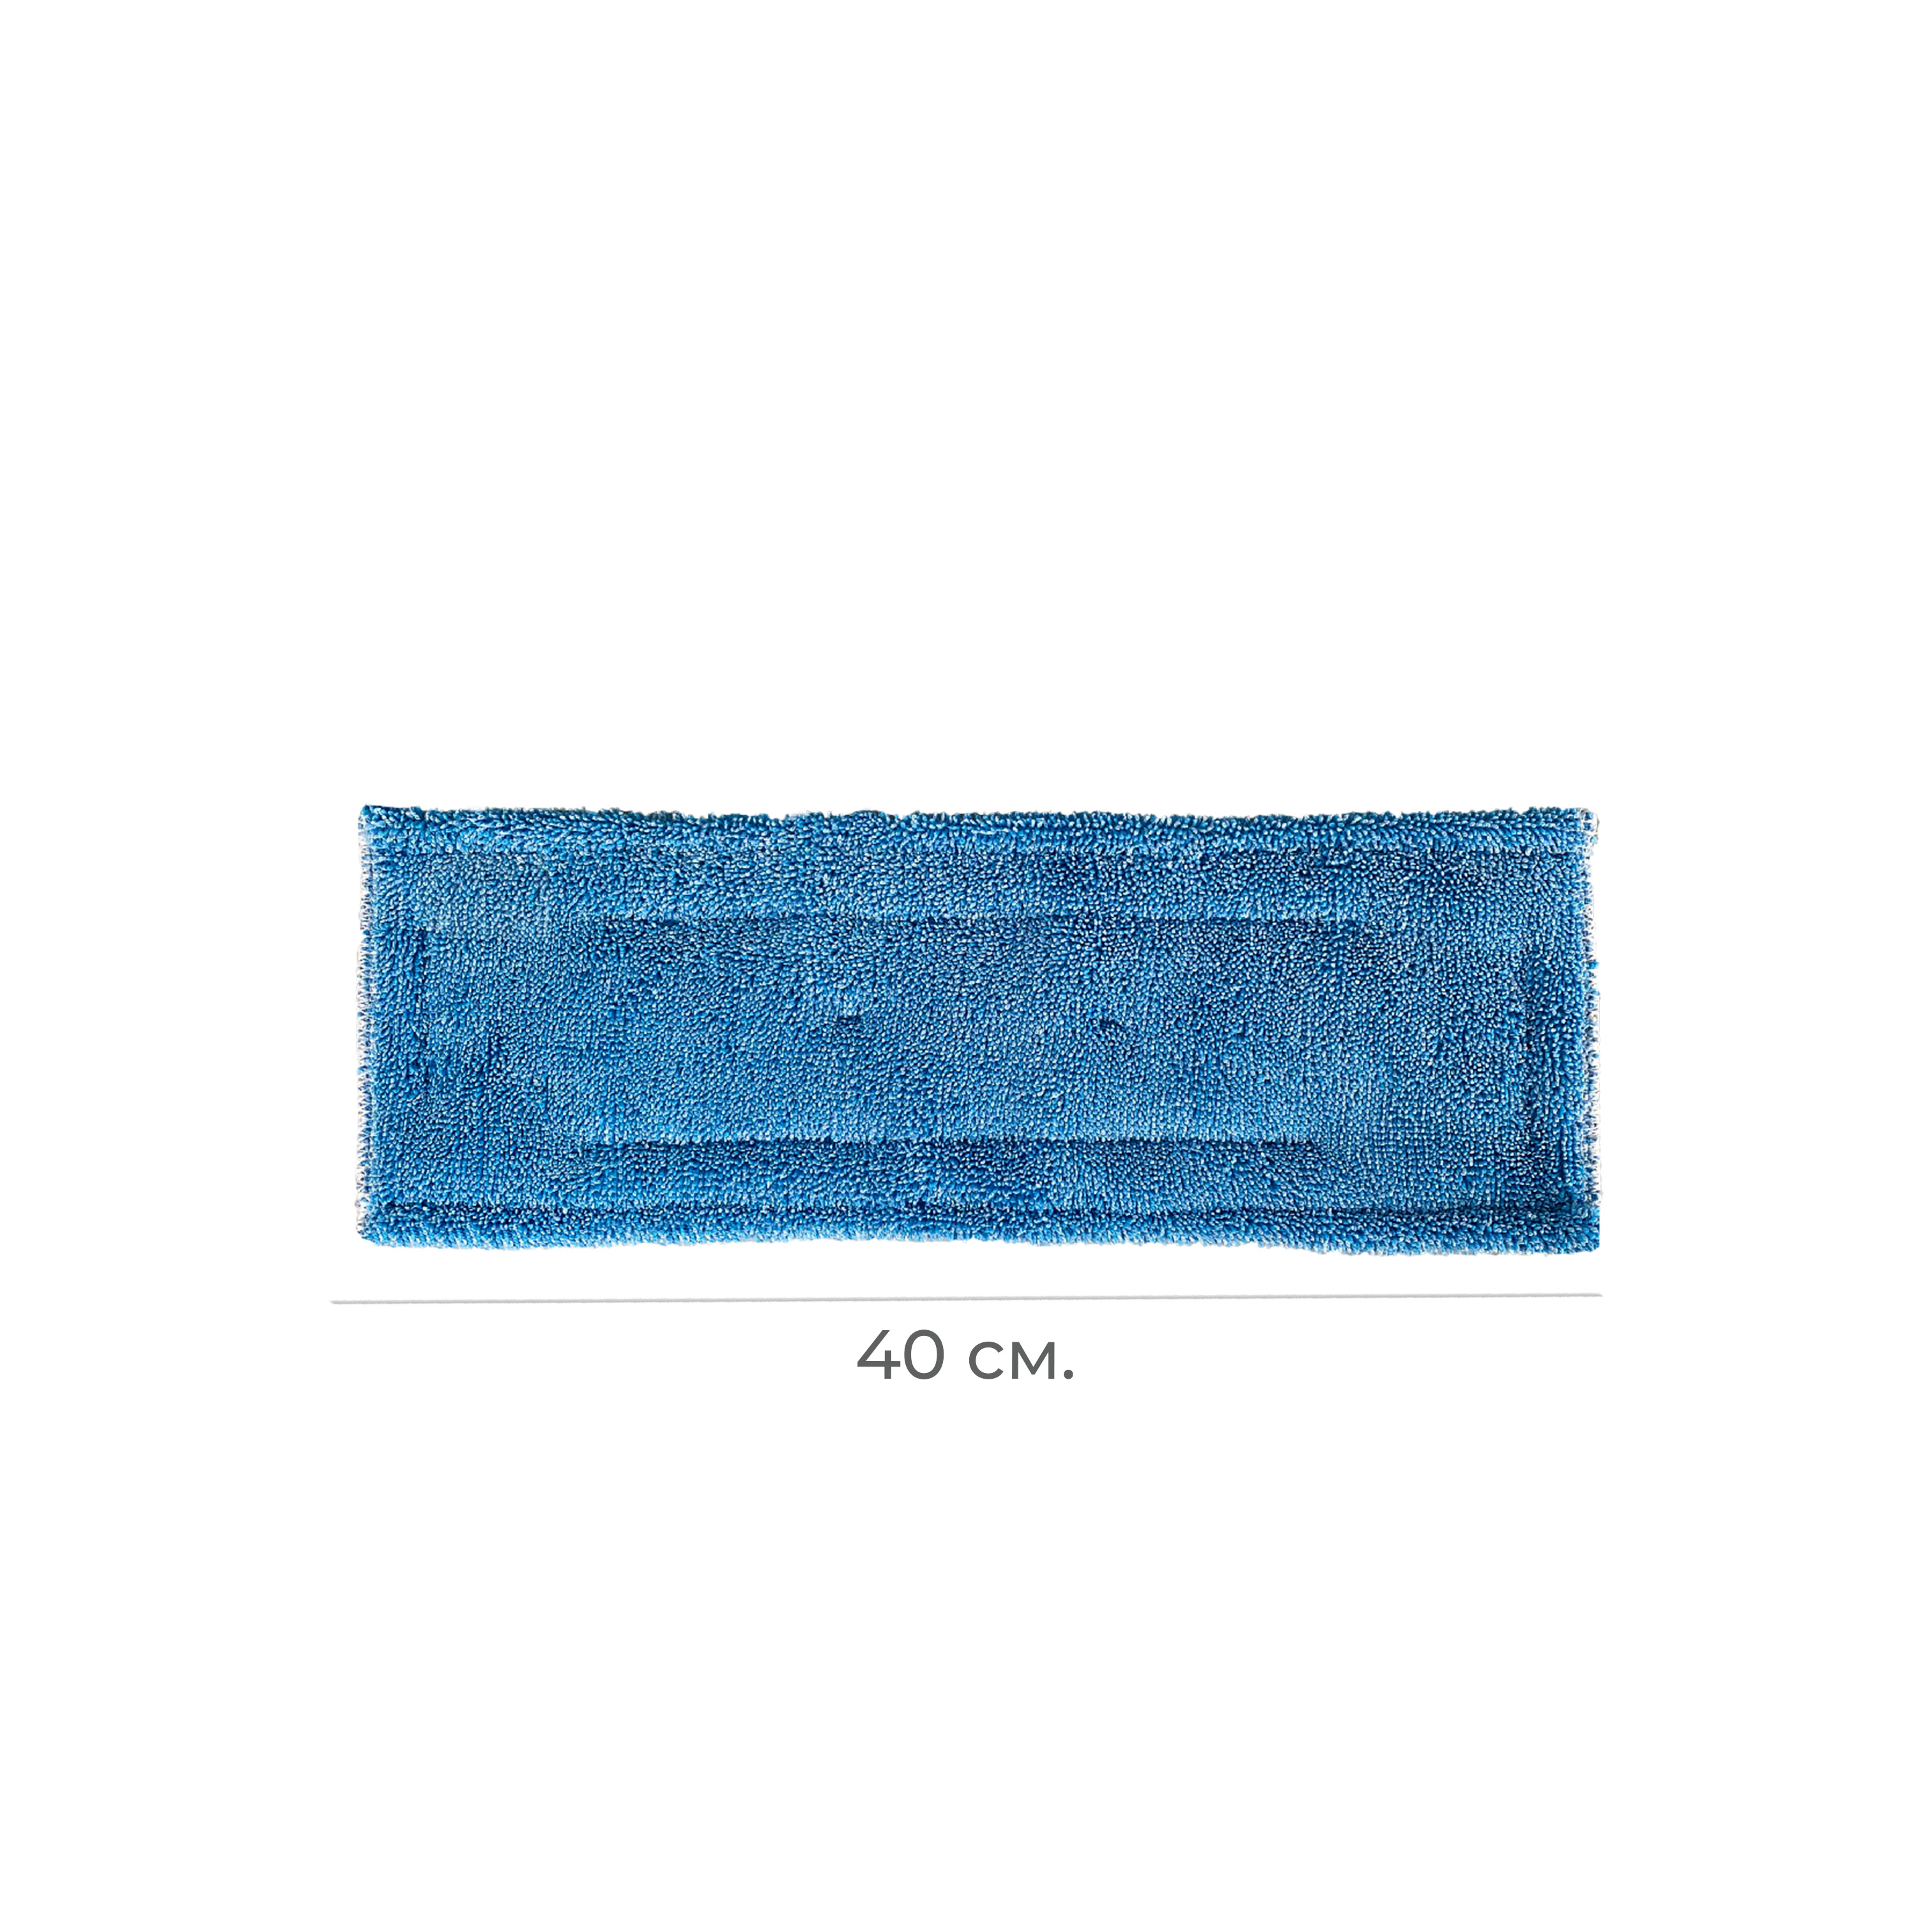 Моп микроволоконный петельный синий 40 см Росмоп карман/язык MMB-40-RQ